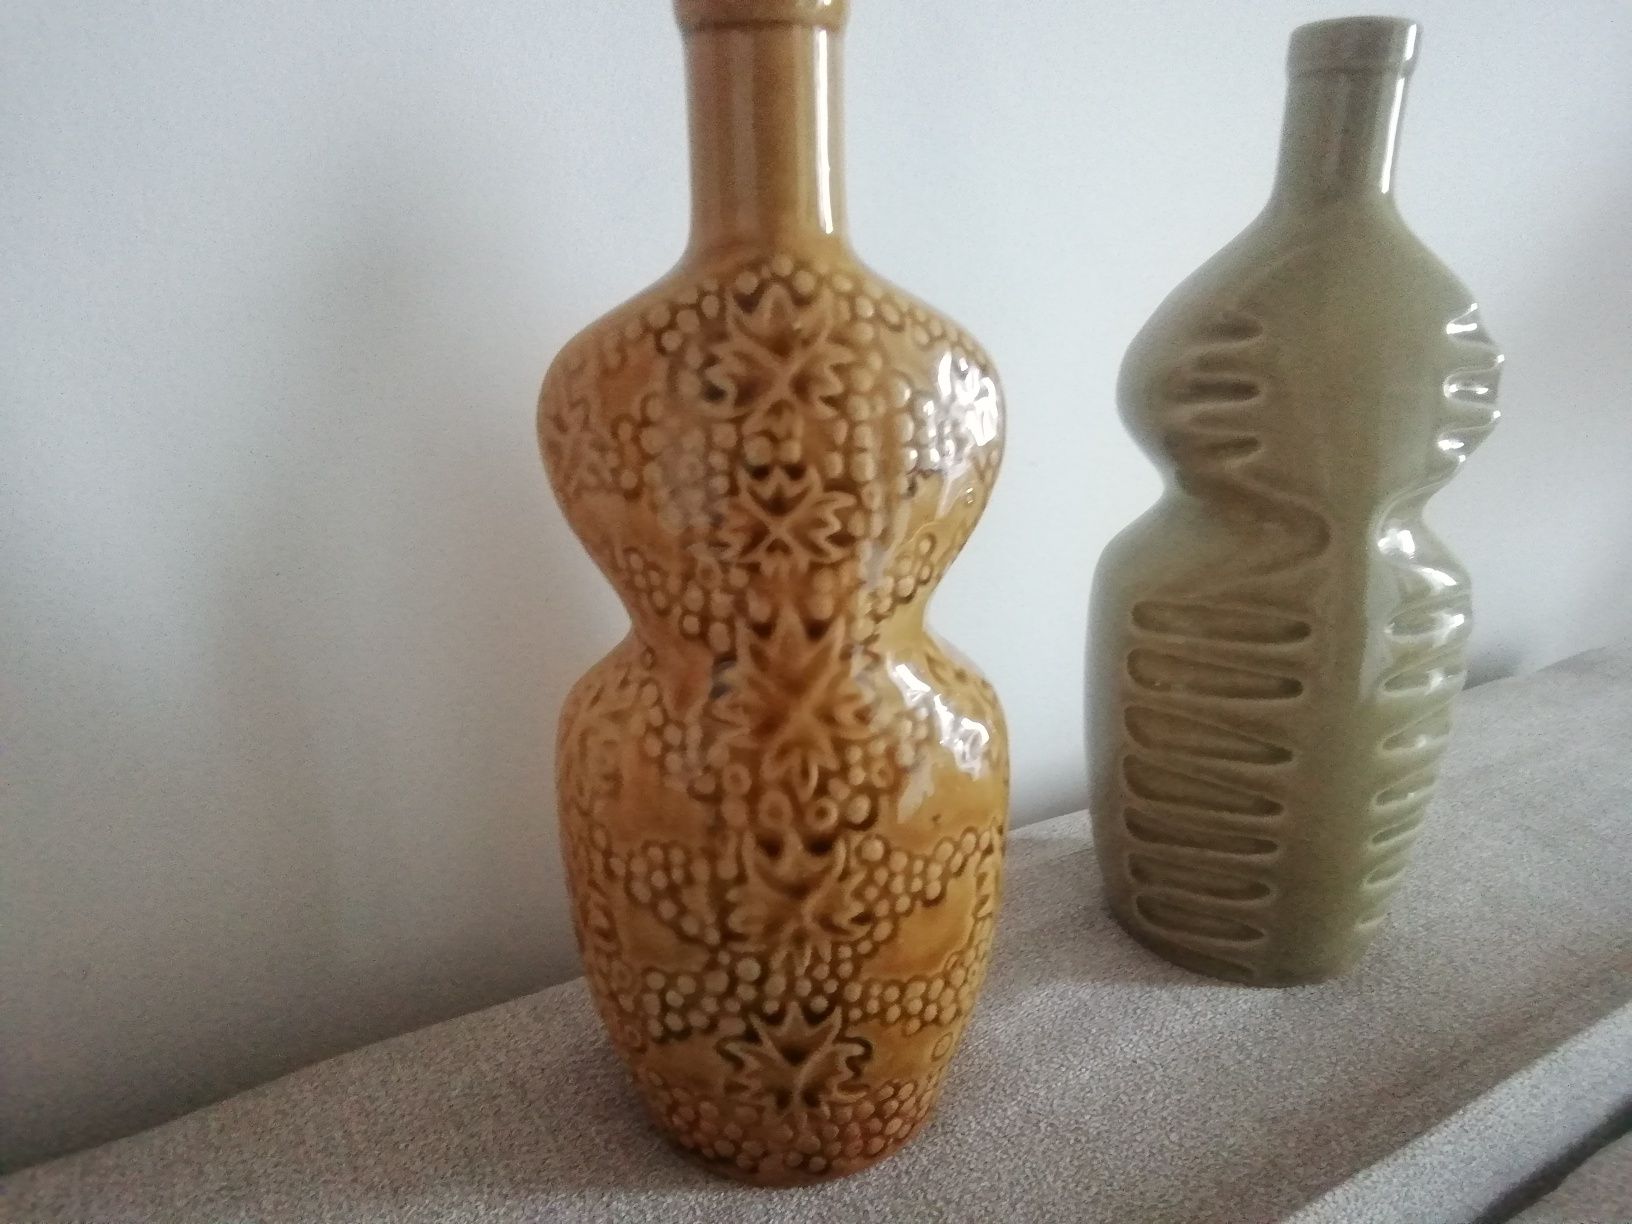 Ozdobne ceramiczne butelki, lata 80